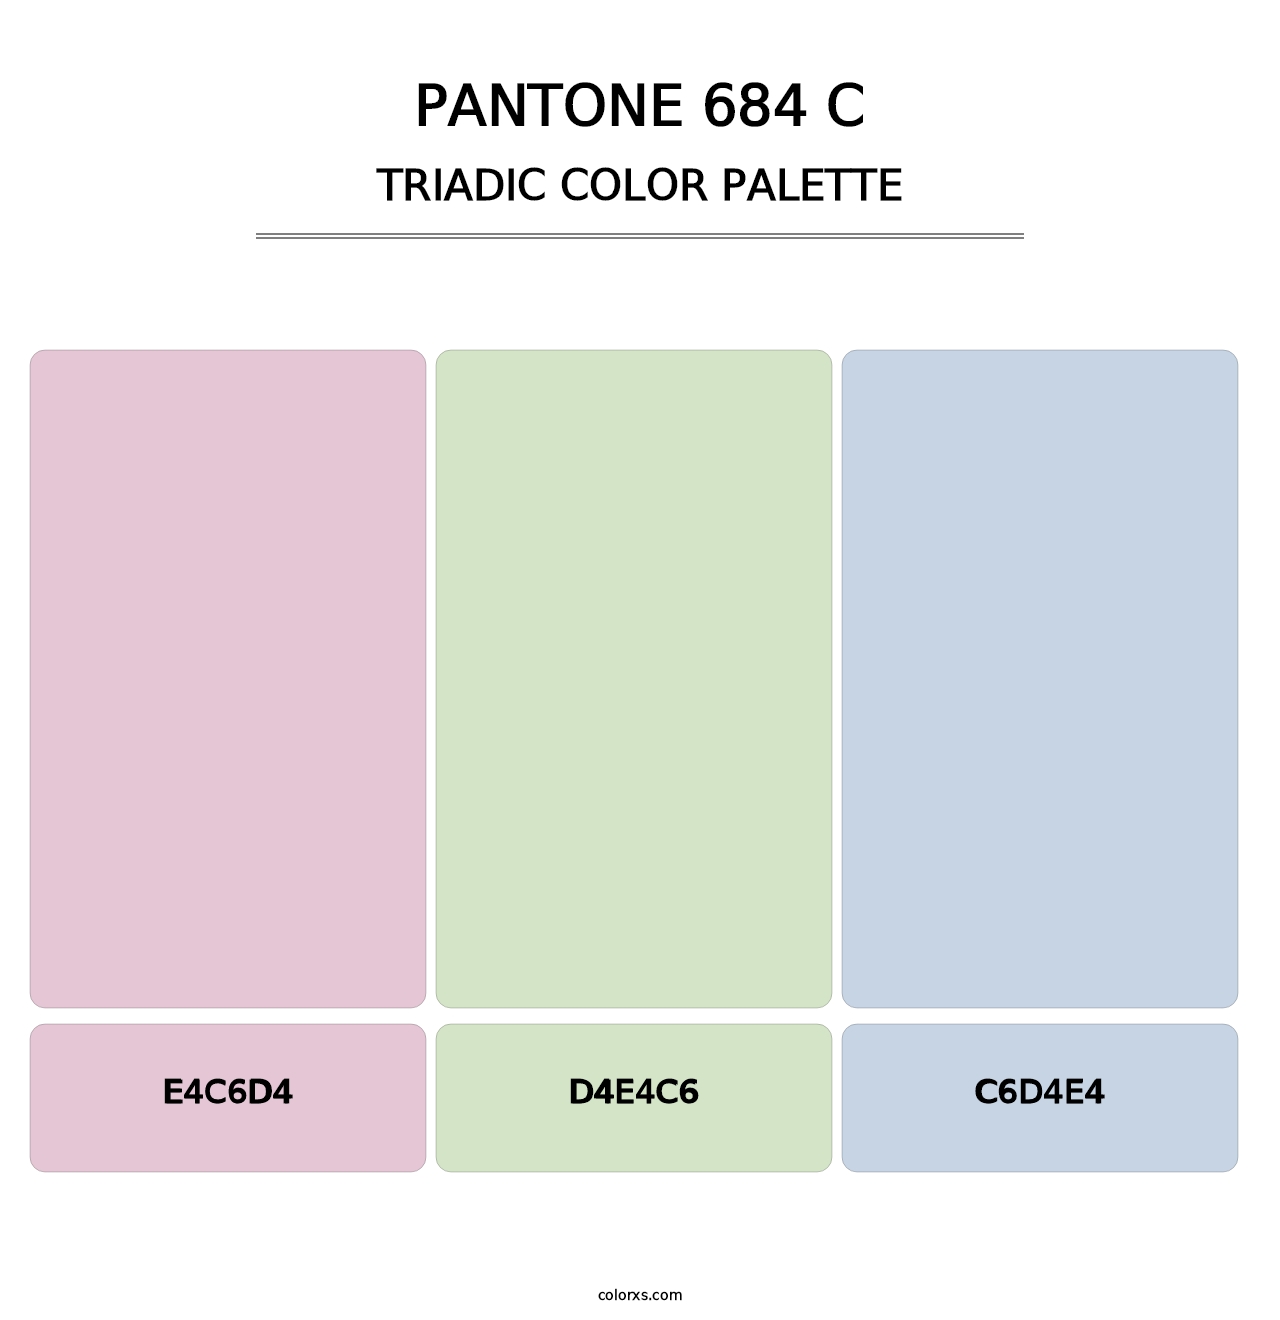 PANTONE 684 C - Triadic Color Palette